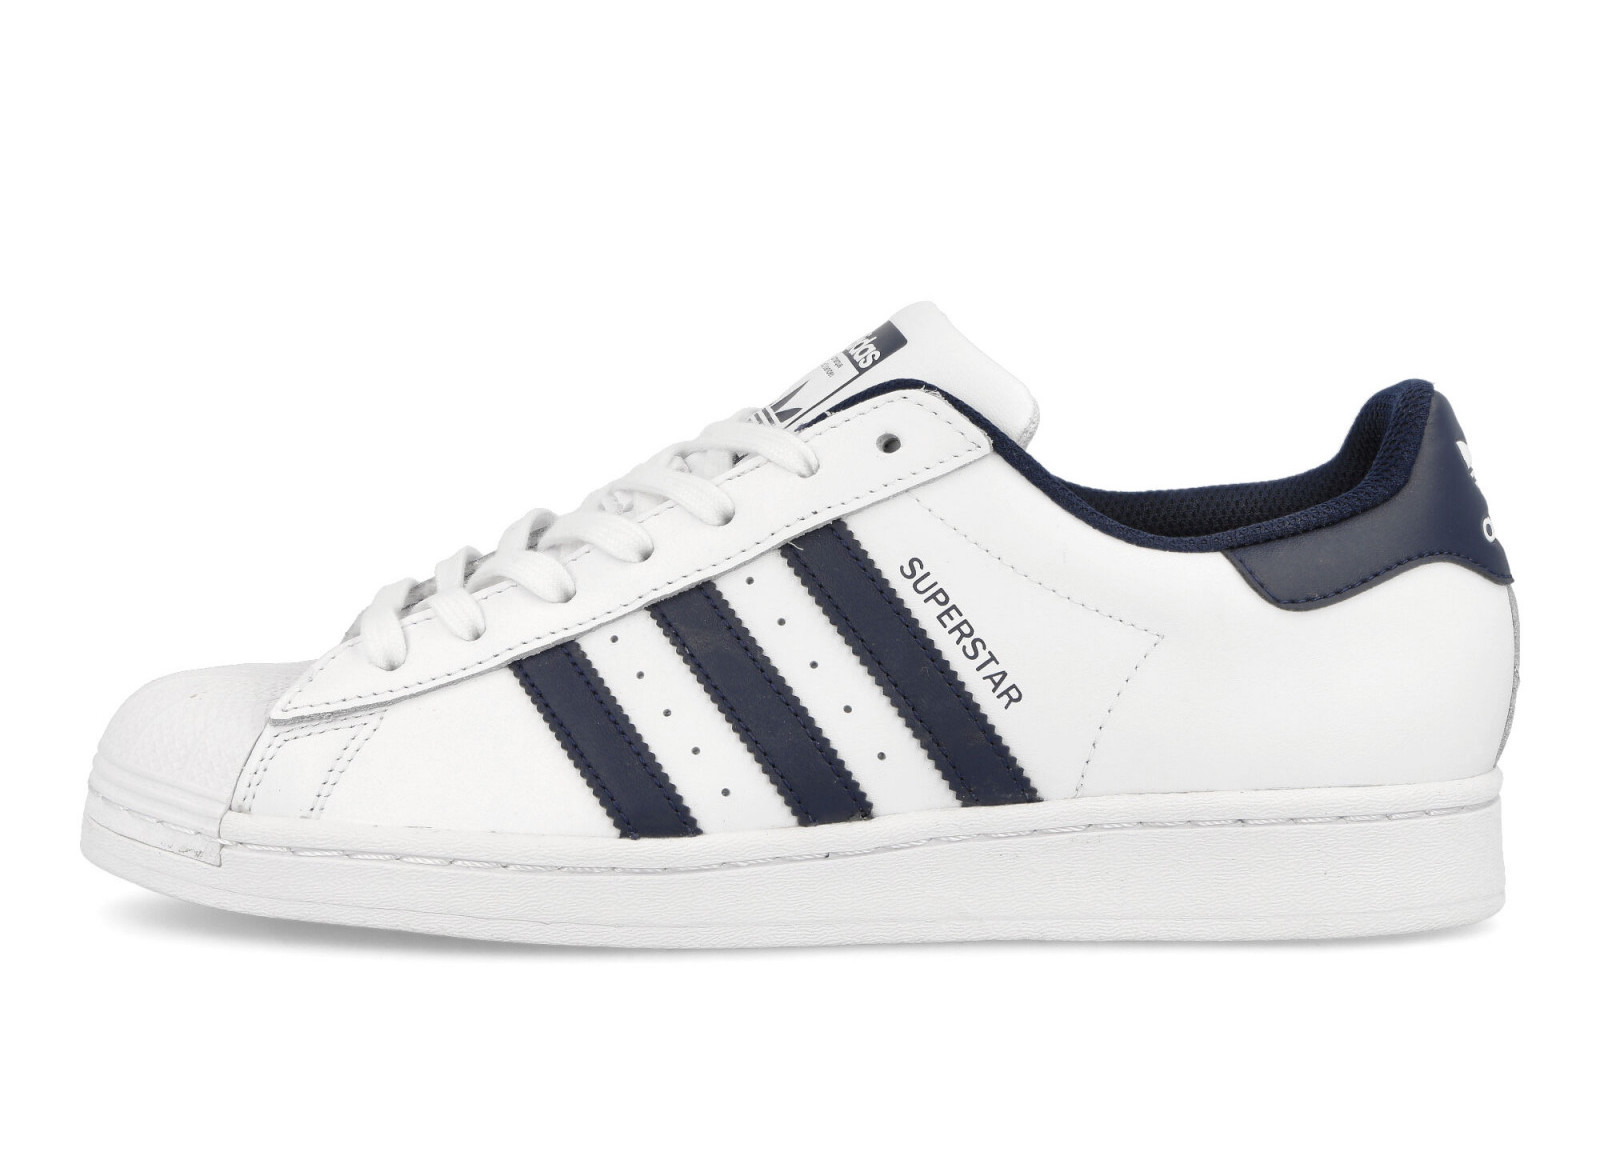 Adidas Superstar
White / Navy